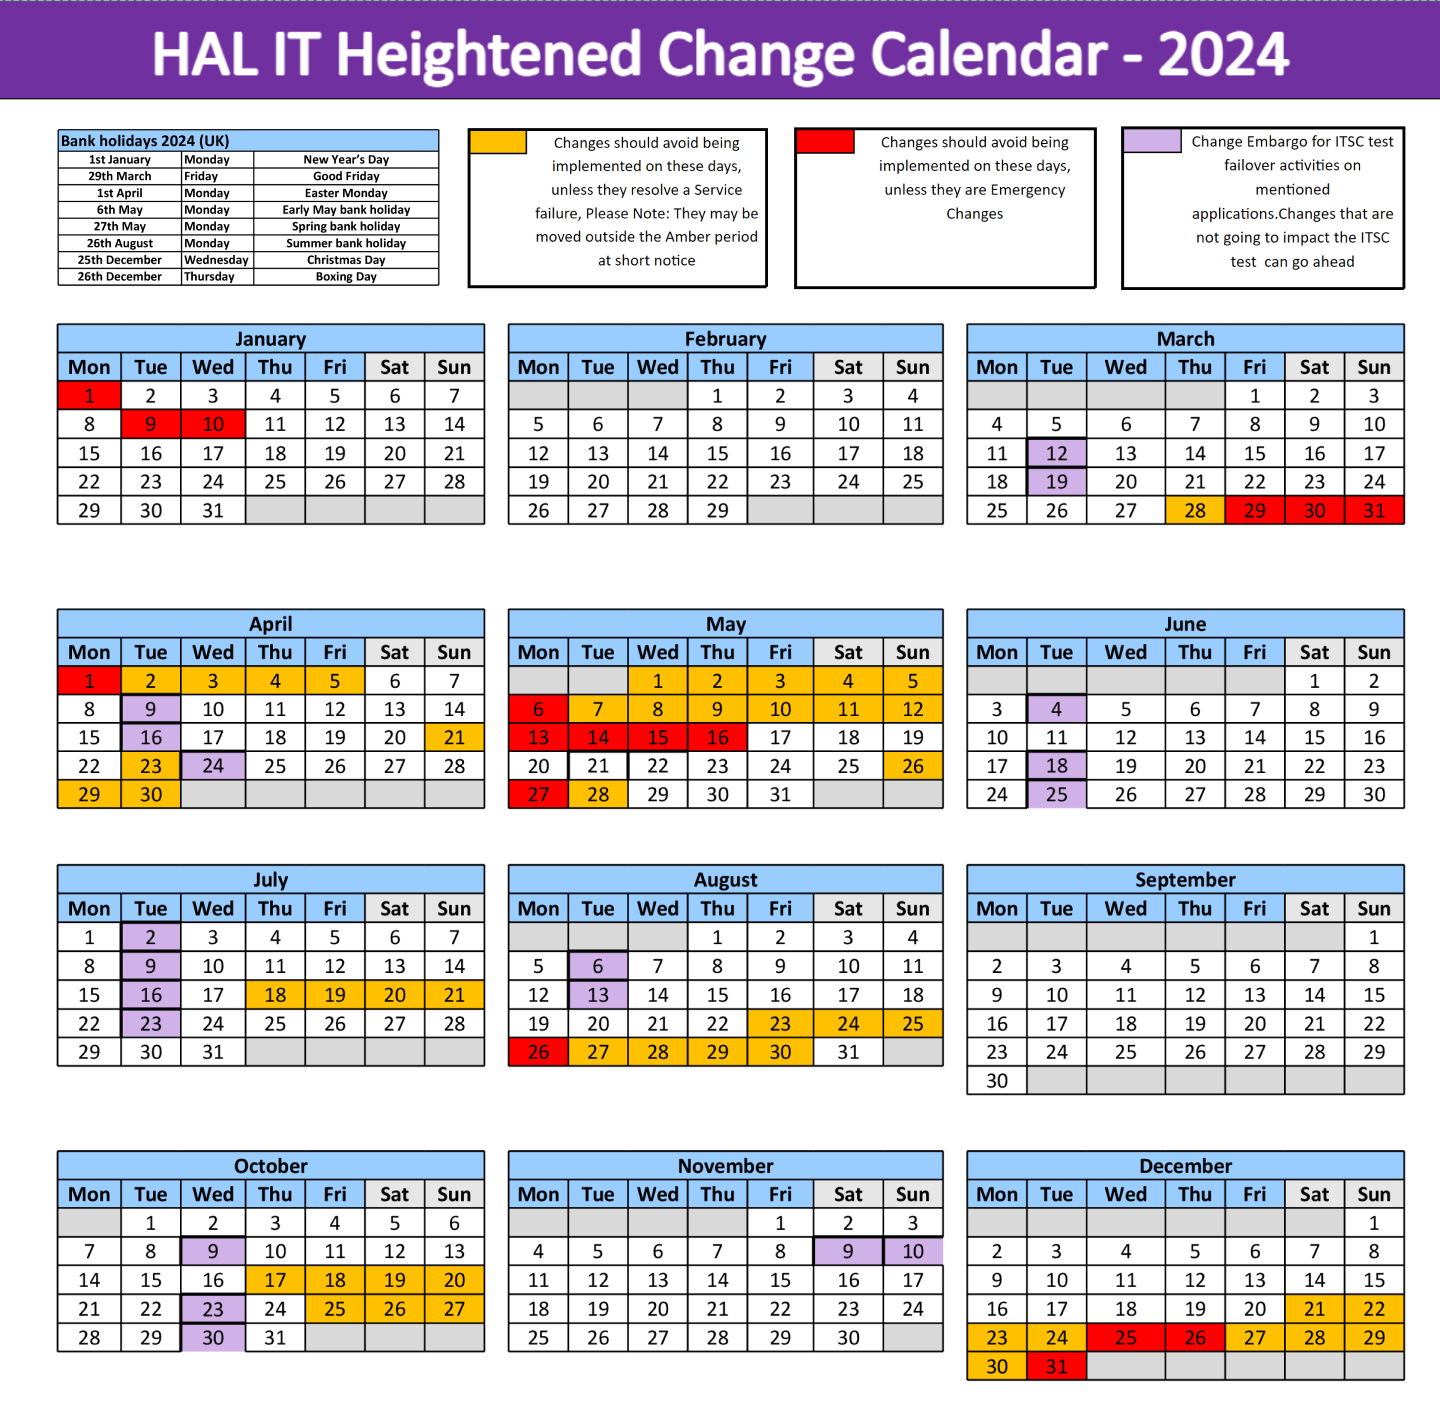 HCC Dates